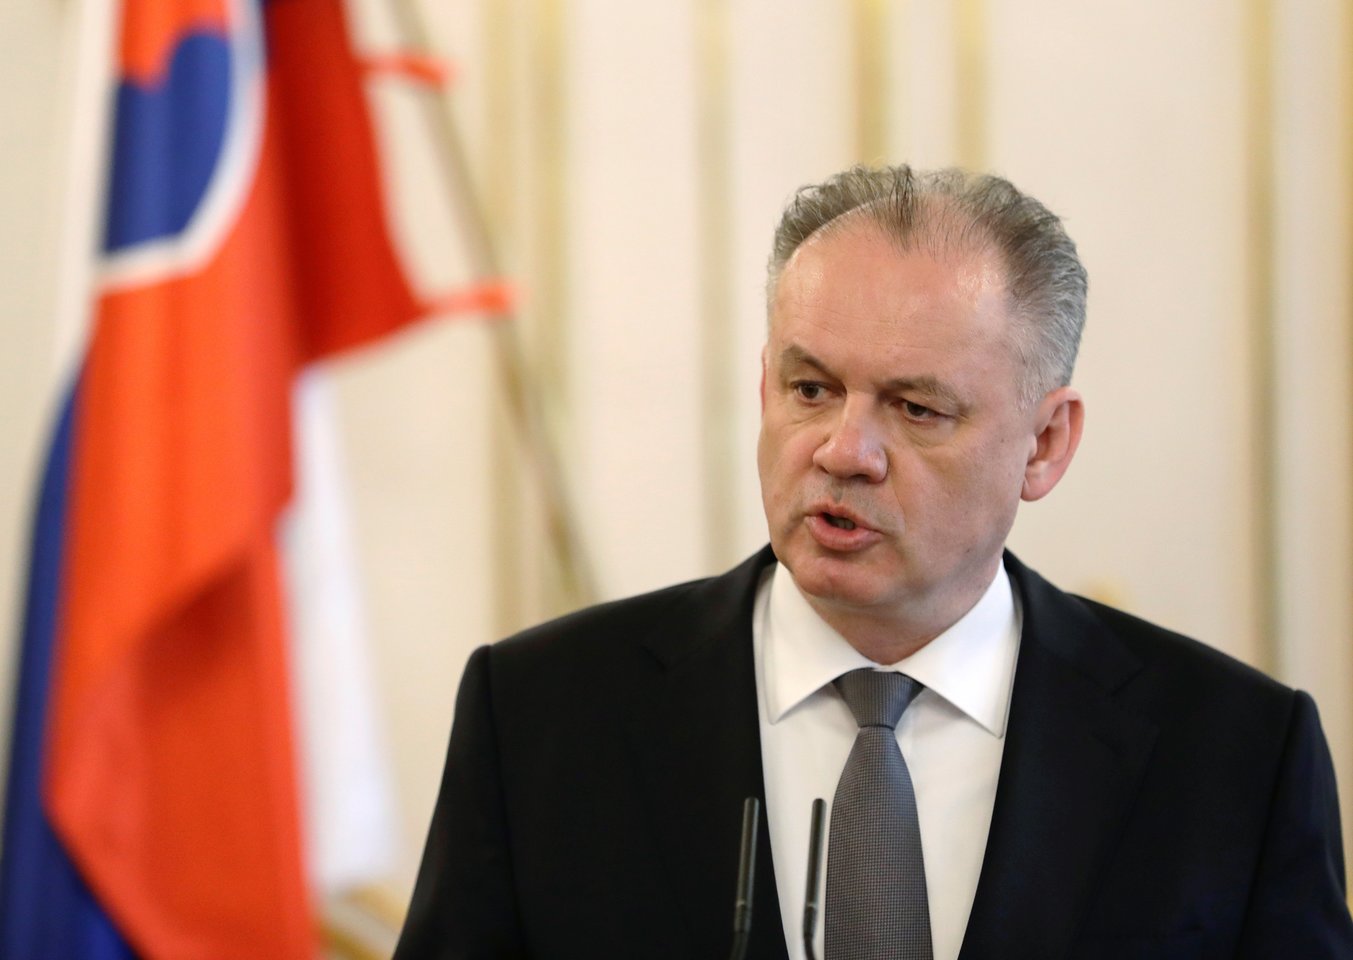  Slovakijos prezidentas Andrejus Kiska antradienį pareiškė, kad nesieks antros kadencijos šiame poste per kitąmet vyksiančius rinkimus.<br> Reuters/Scanpix nuotr.